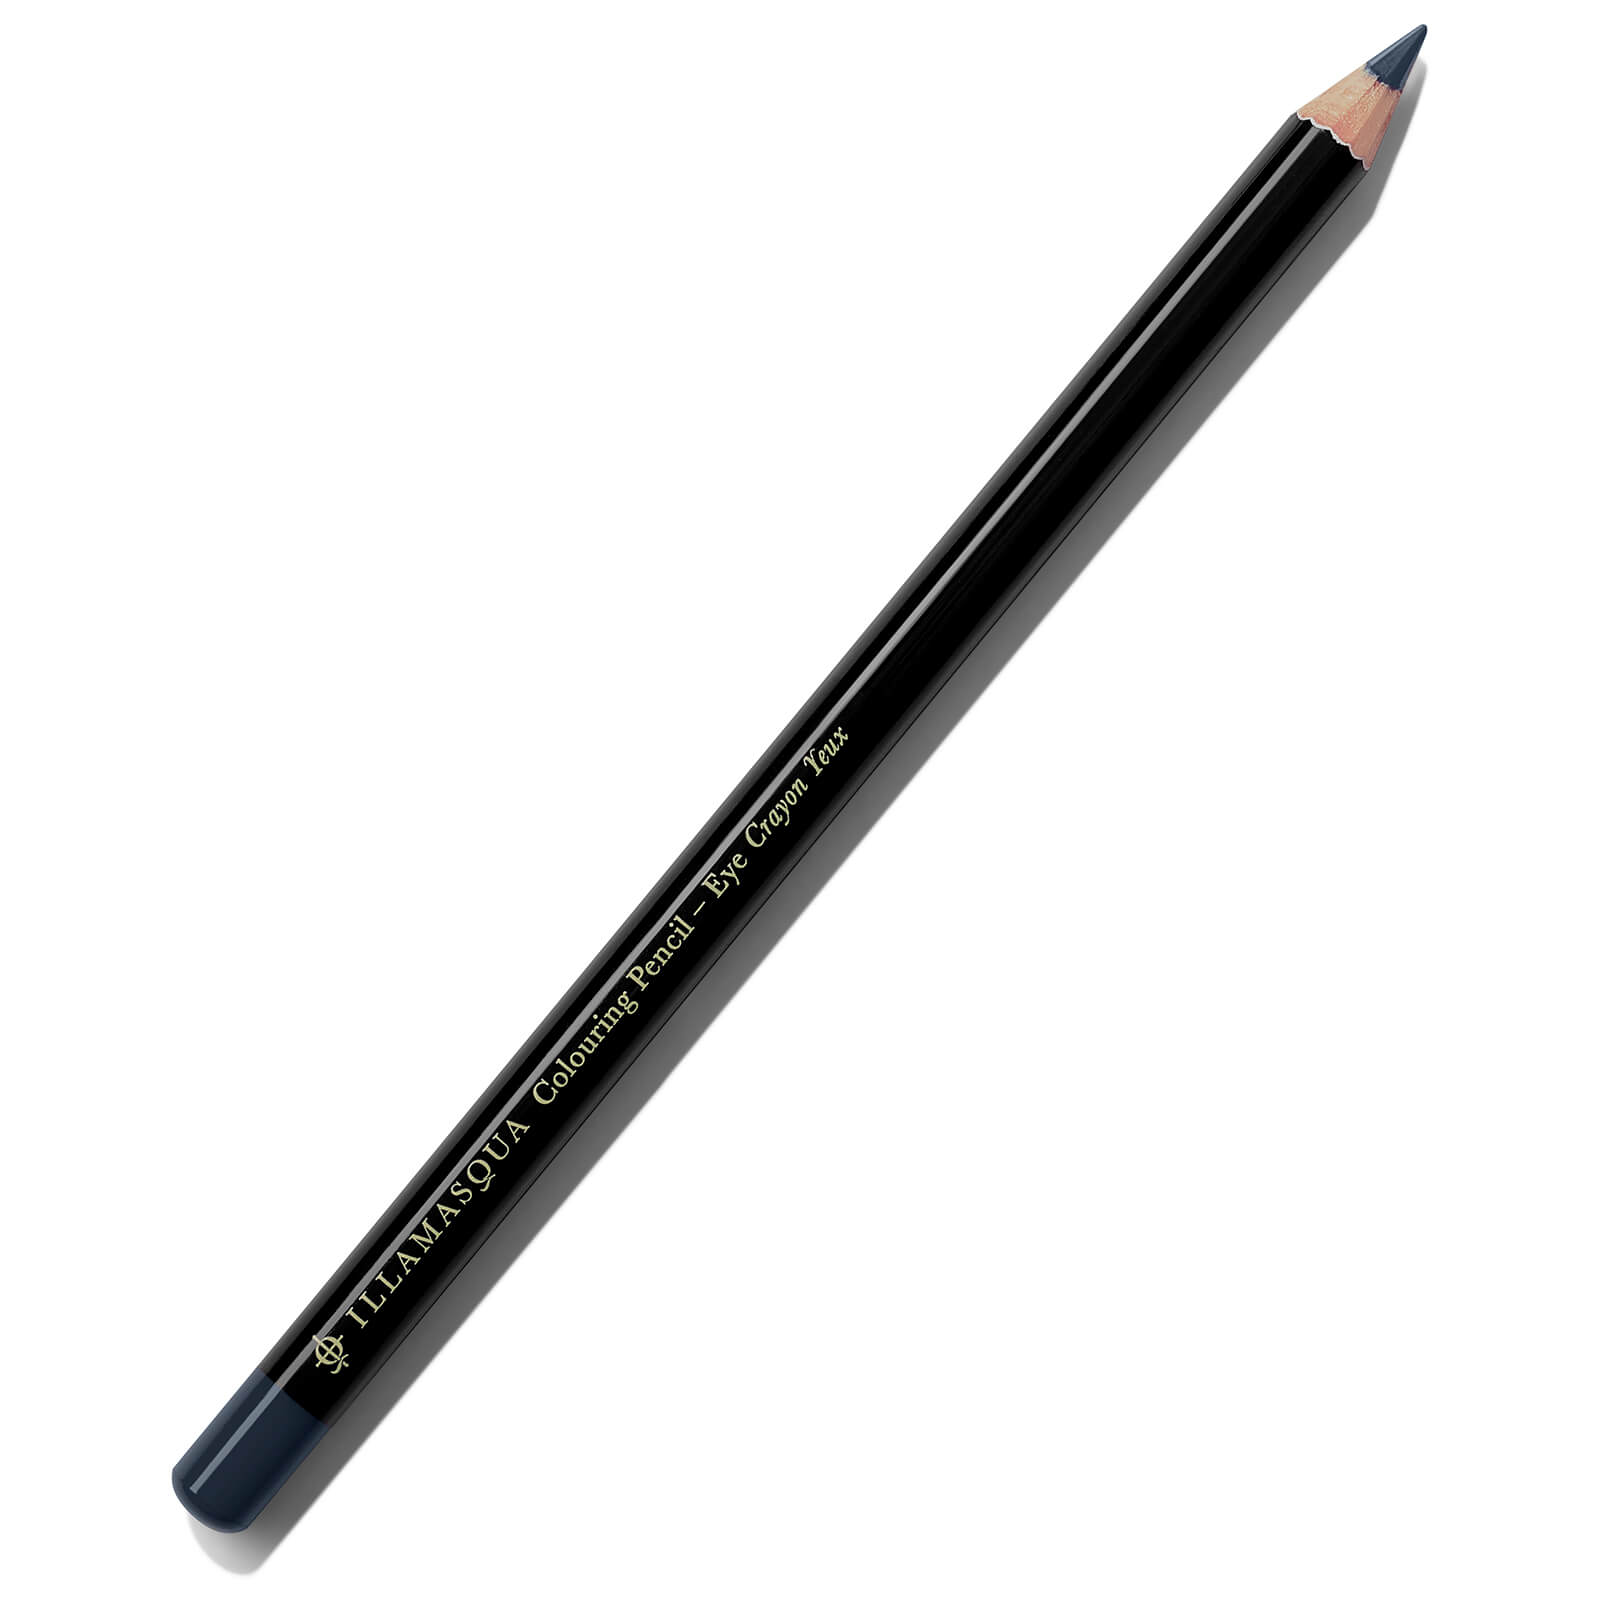 Illamasqua Colouring Eye Pencil 1.4g (Various Shades) - Navy